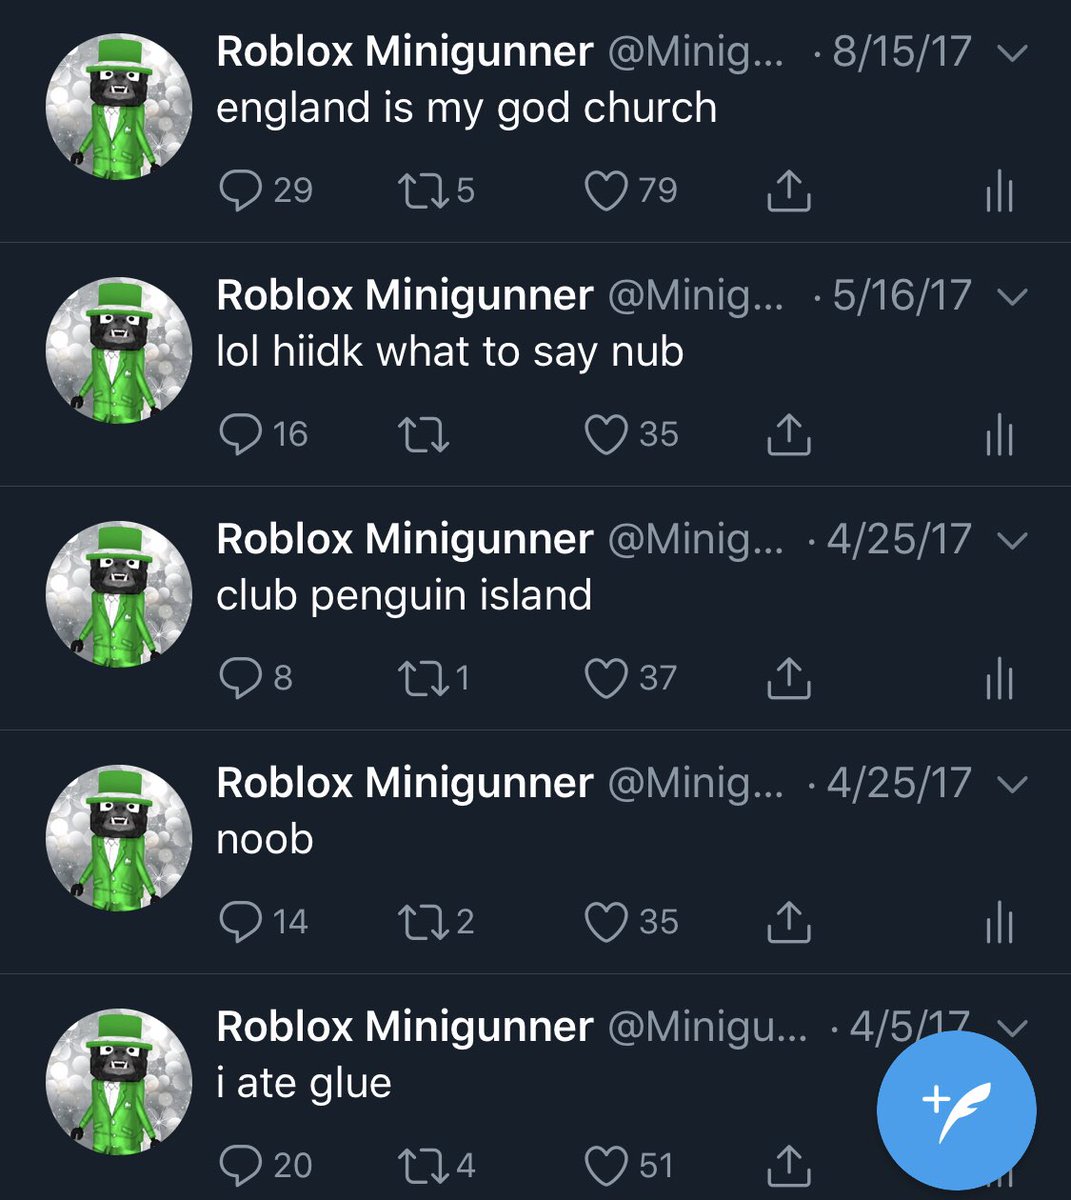 Roblox Minigunner On Twitter My First Ever Tweets Were Gold I - roblox minigunner on twitter my first ever tweets were